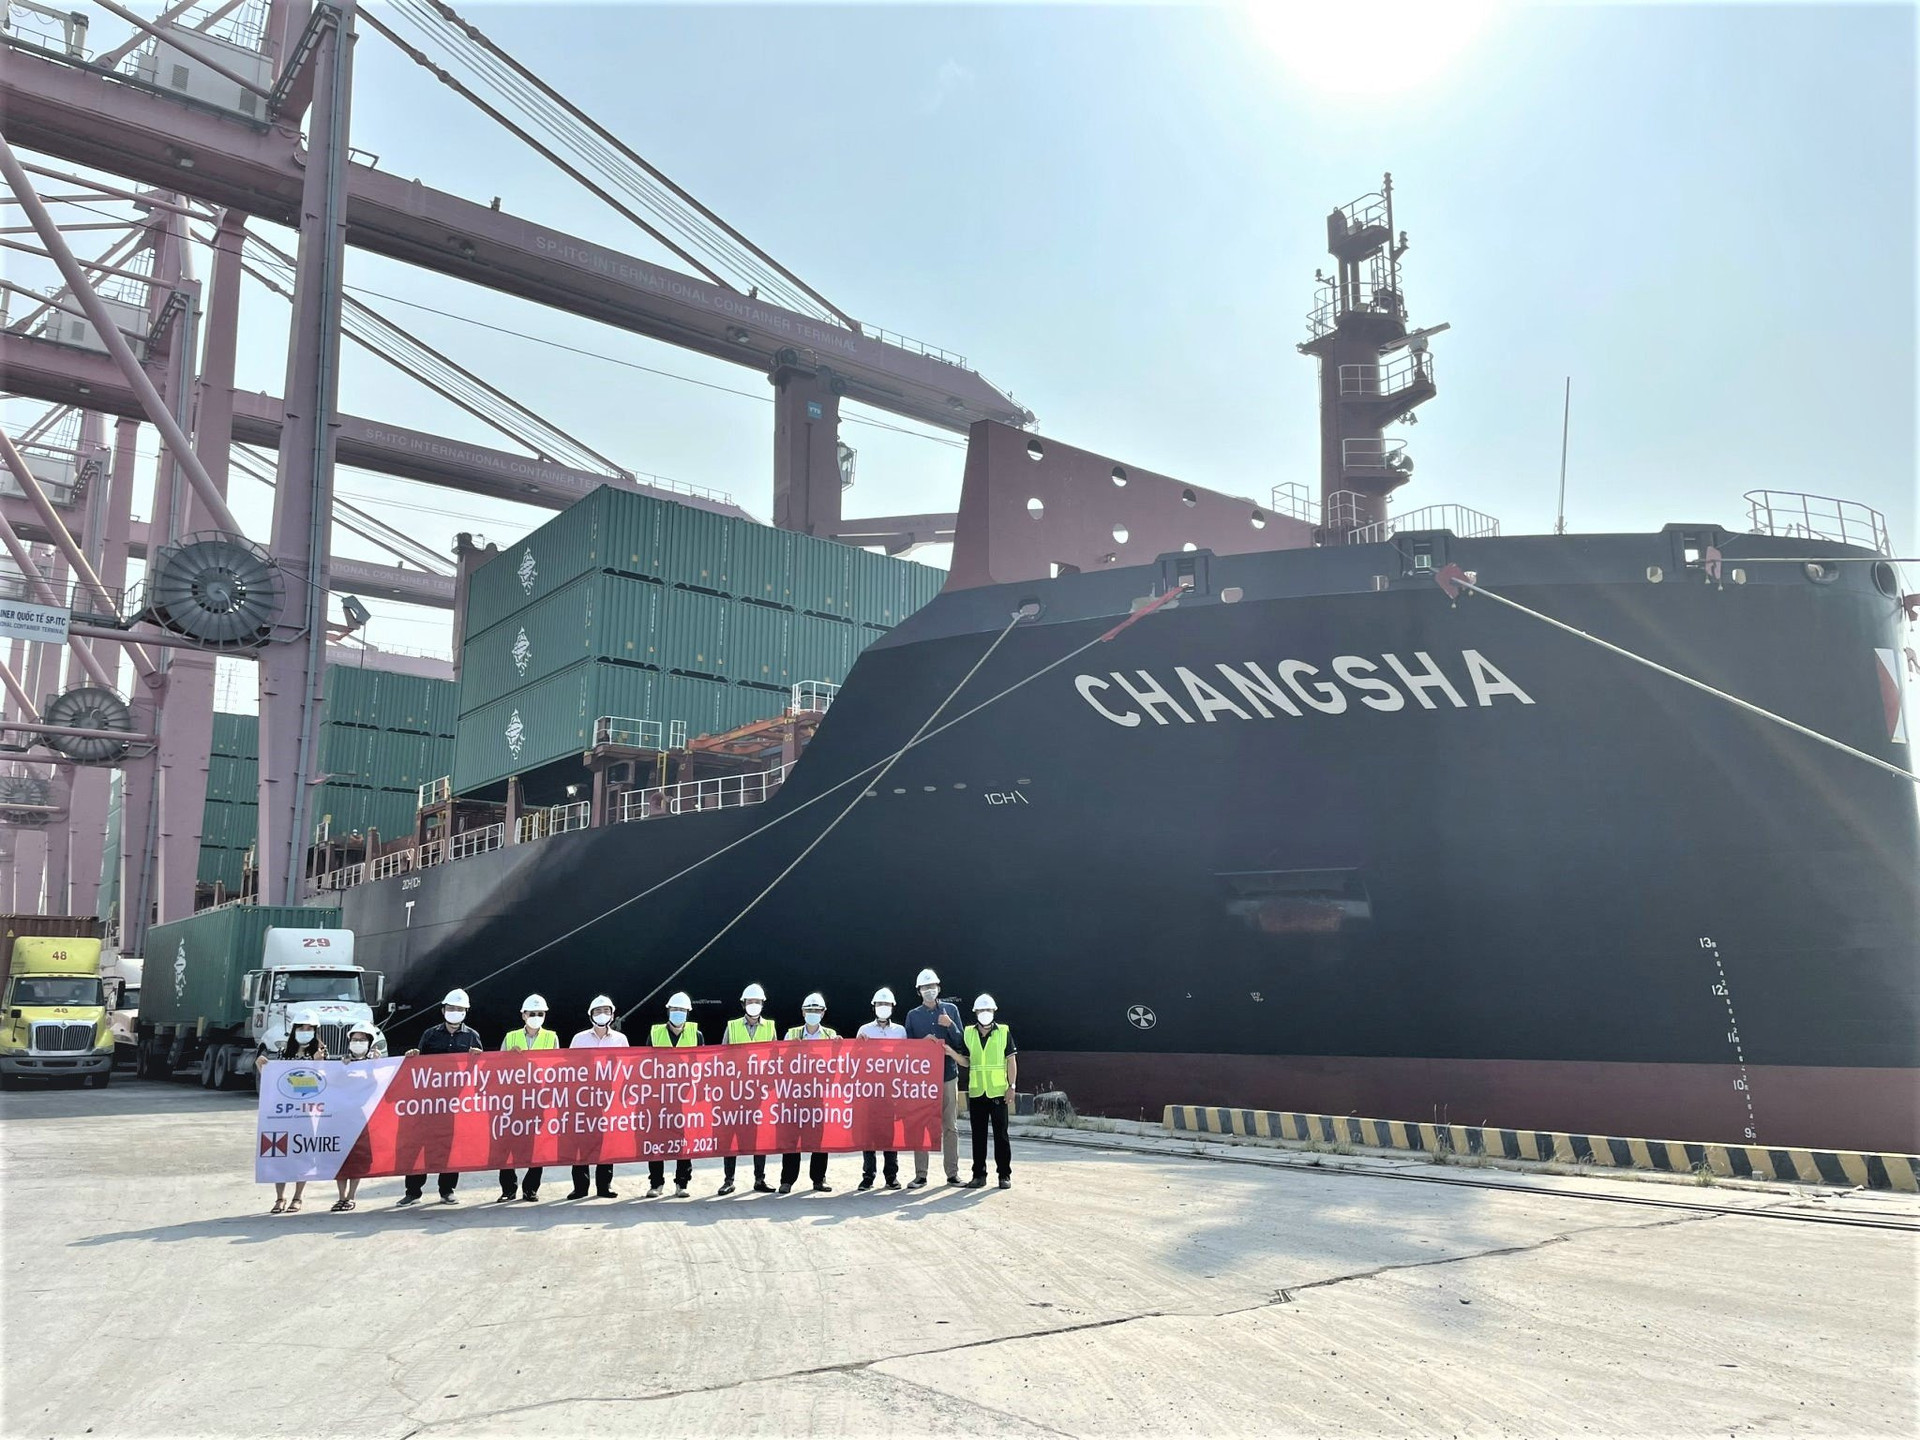  Cảng SP-ITC đã tiếp nhận tàu Changsha đến làm hàng tại cảng